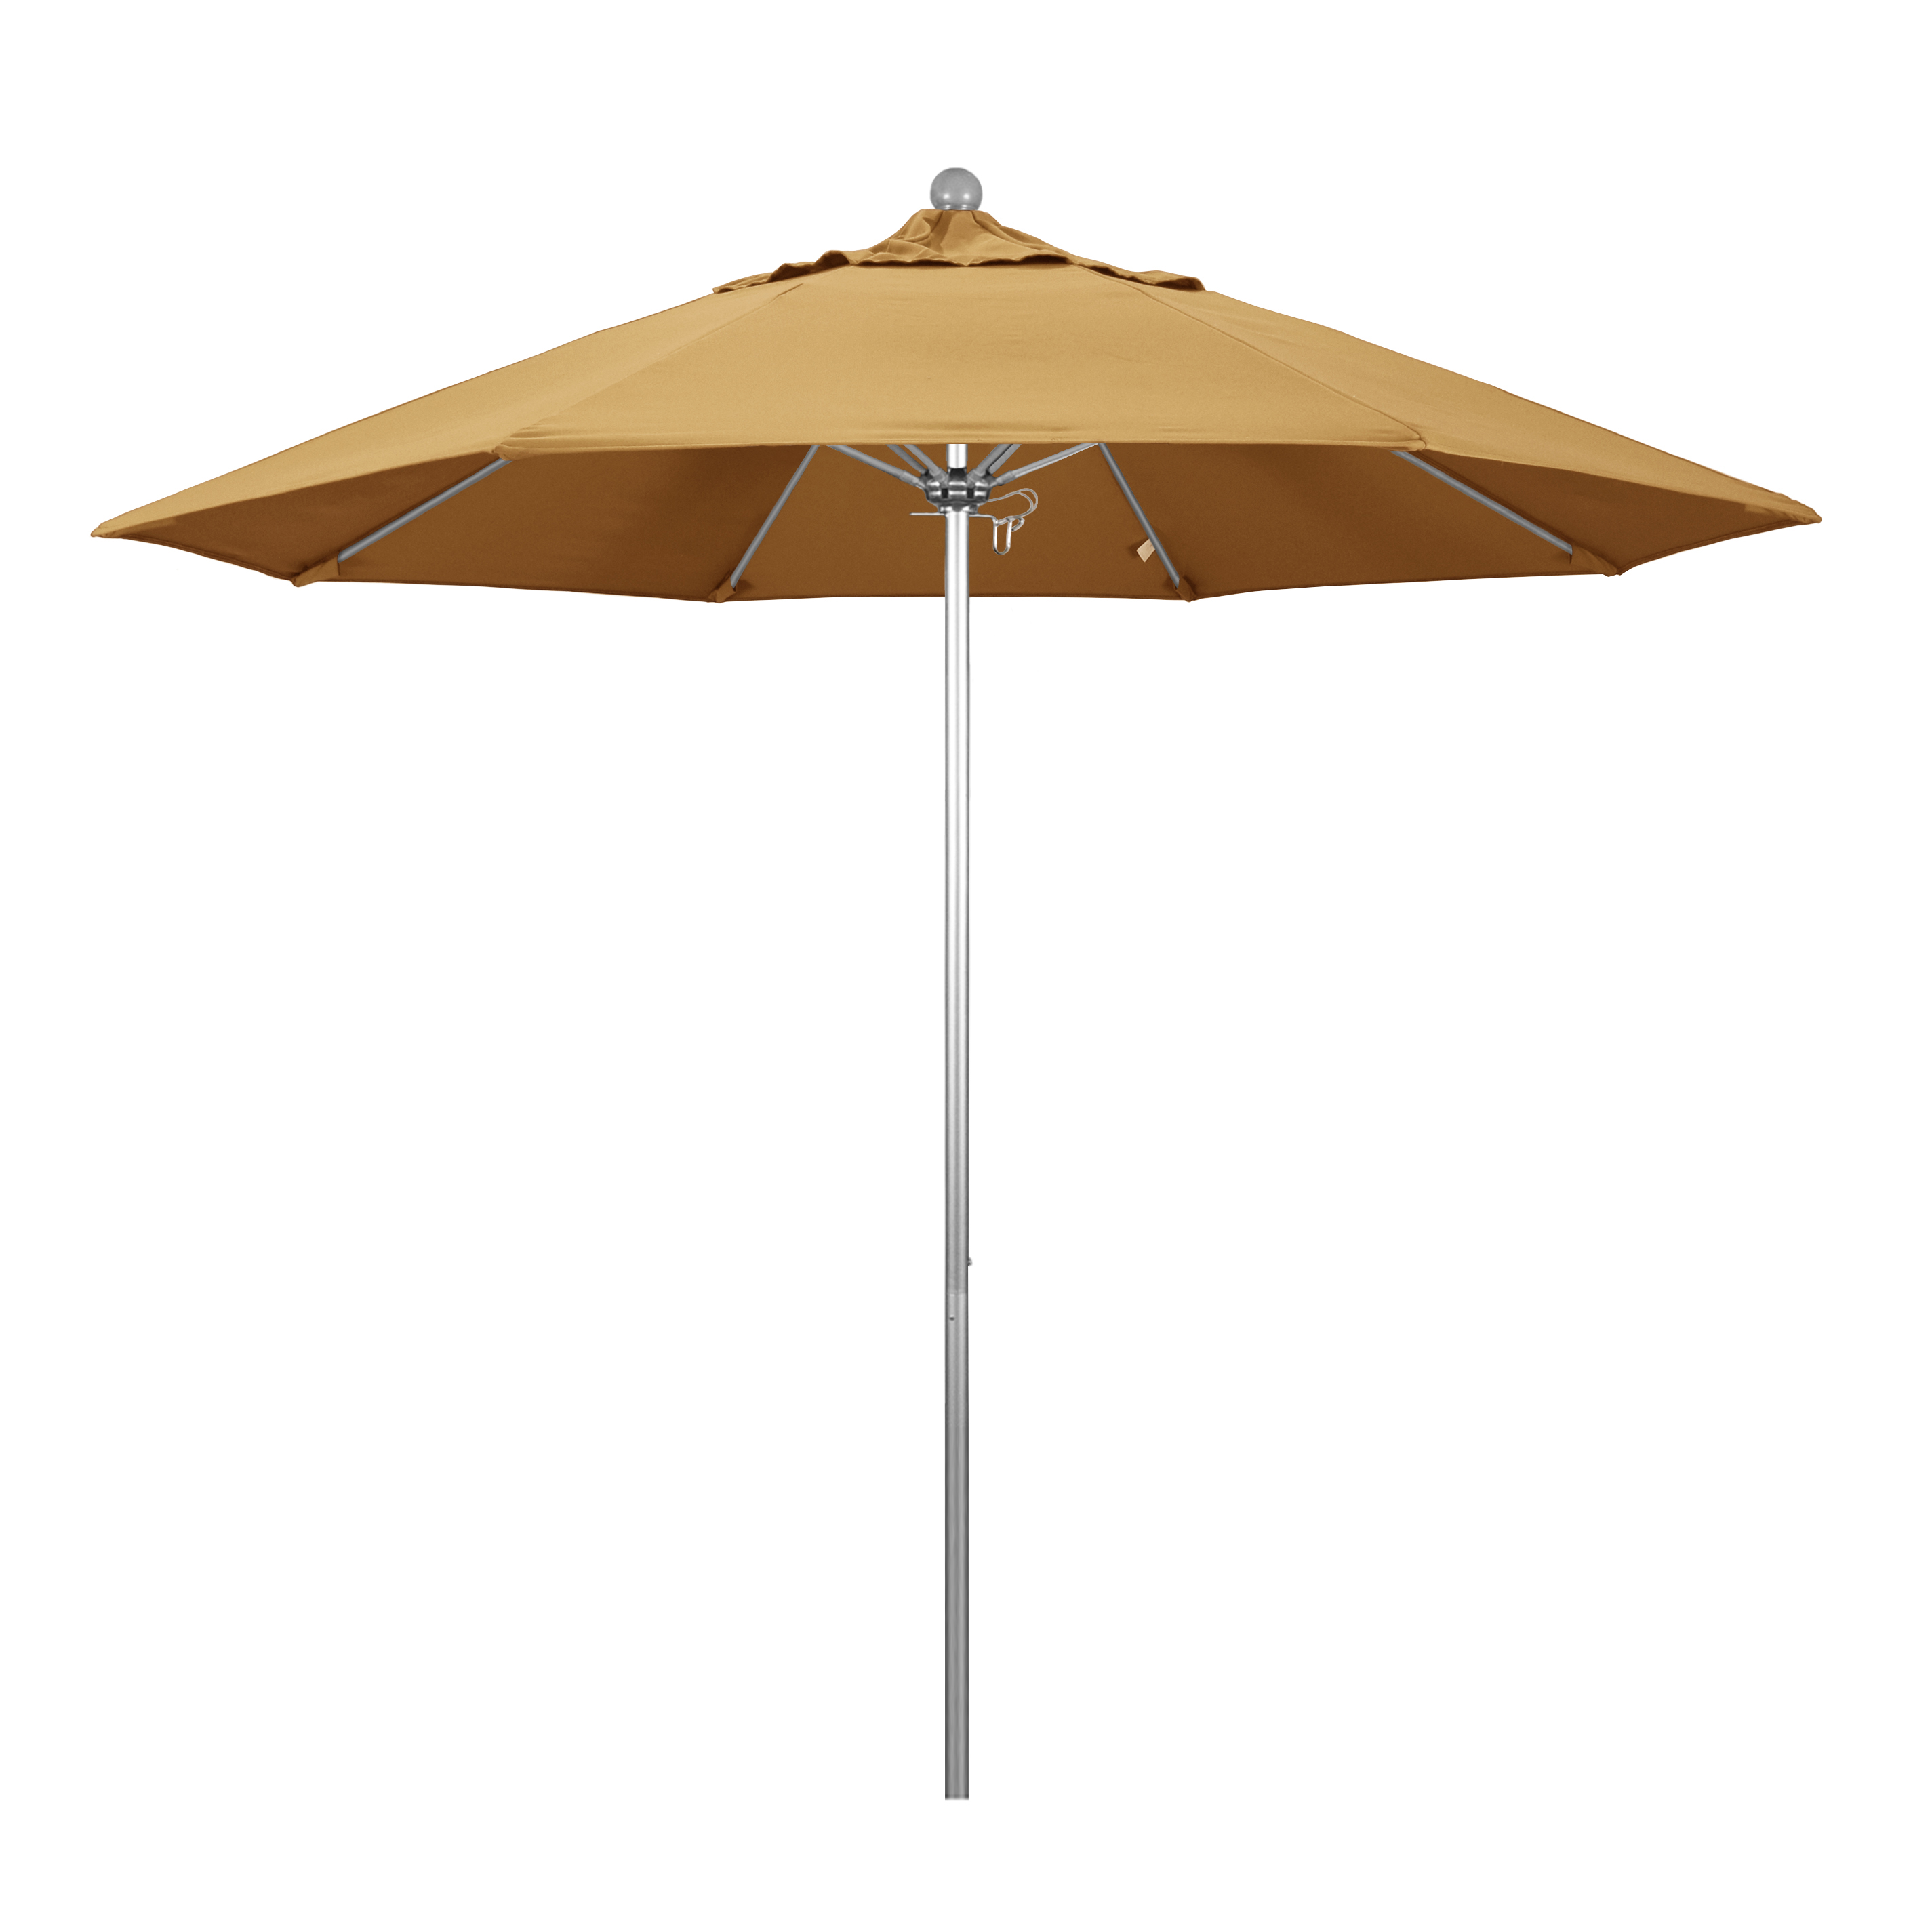 Alto908002-5414 9 Ft. Fiberglass Market Umbrella Pulley Open S Anodized-sunbrella-wheat